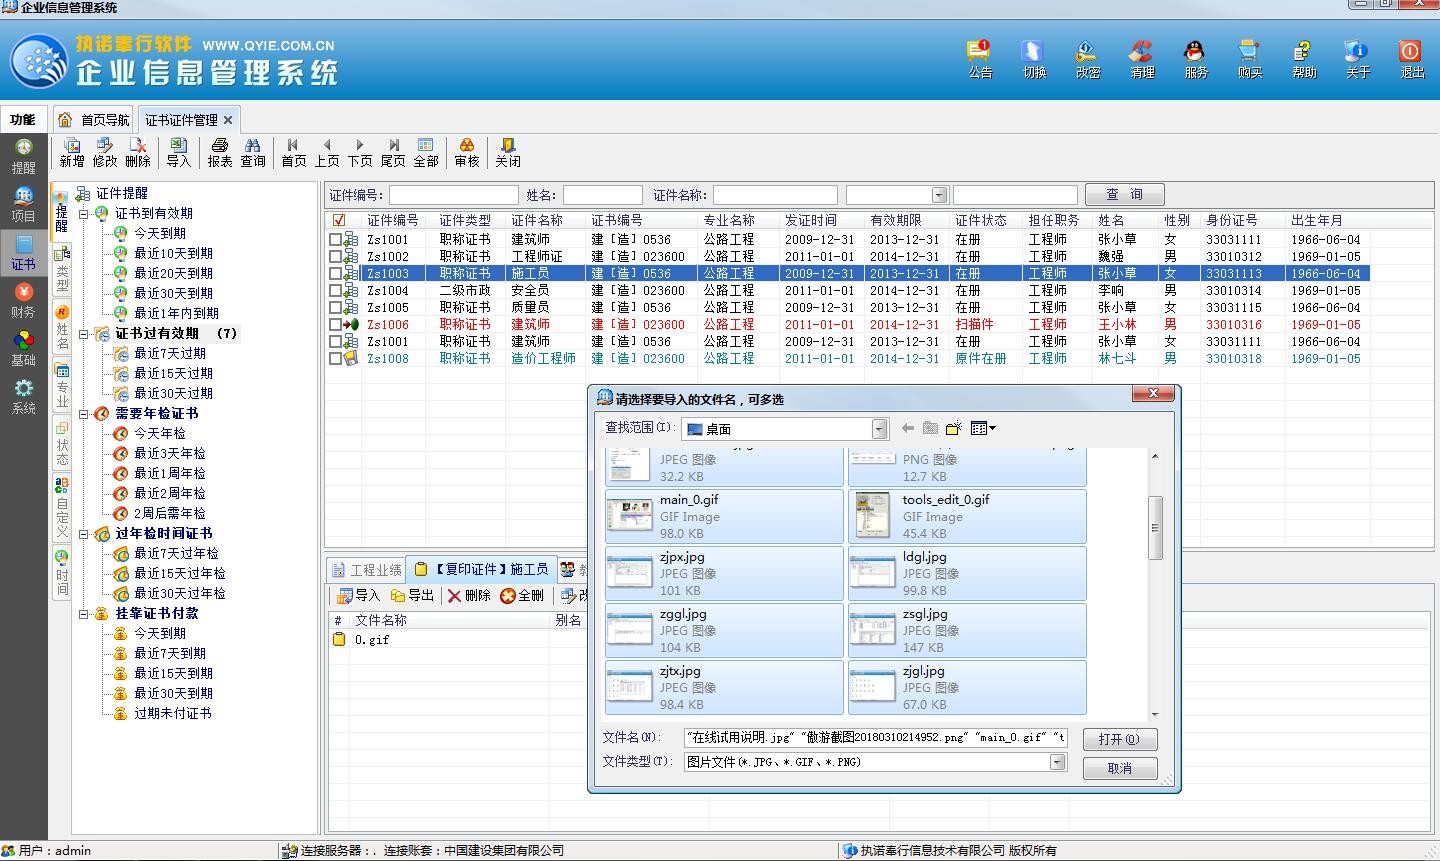 施工企业信息管理系统 6.0